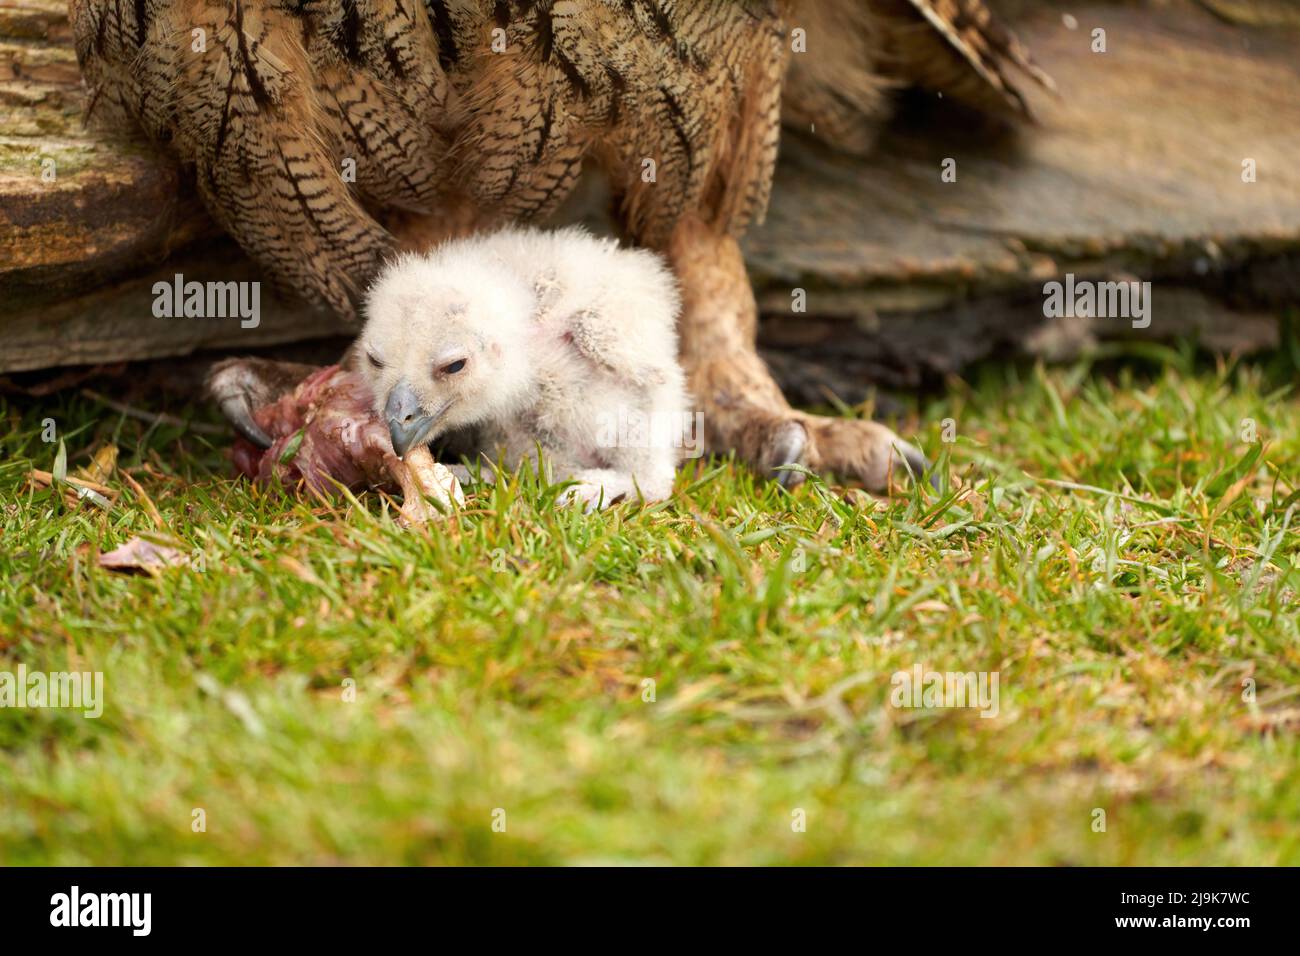 Hibou sauvage de l'aigle eurasien poussin à l'extérieur du poussin blanc est instable manger un morceau de viande.L'oiseau de six jours se trouve à côté des jambes de la mère. Banque D'Images